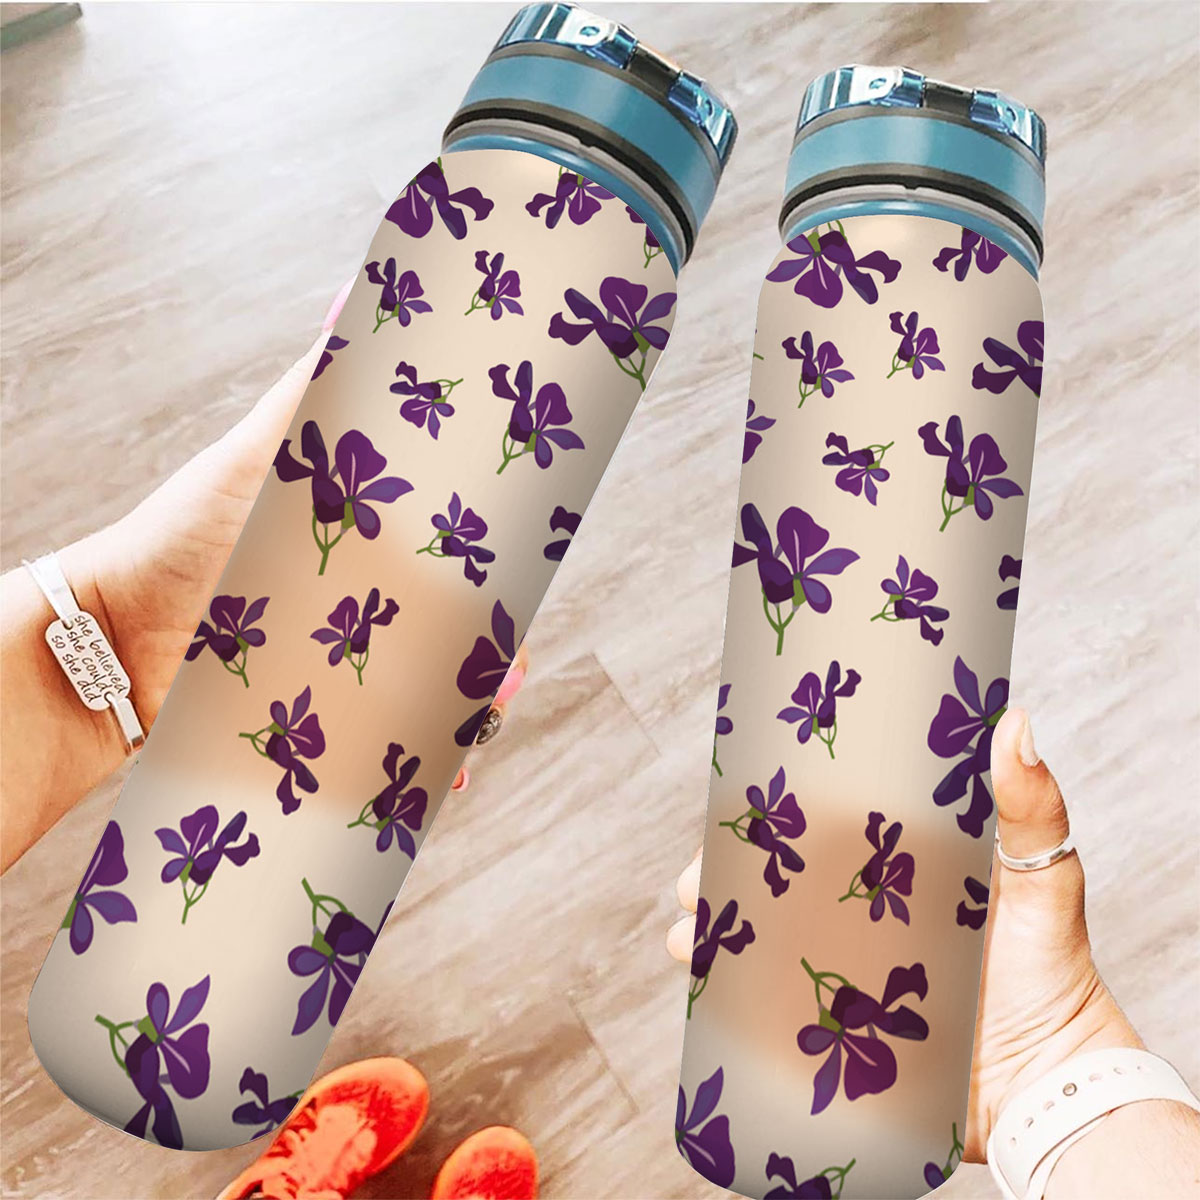 Cute Violet Tracker Bottle